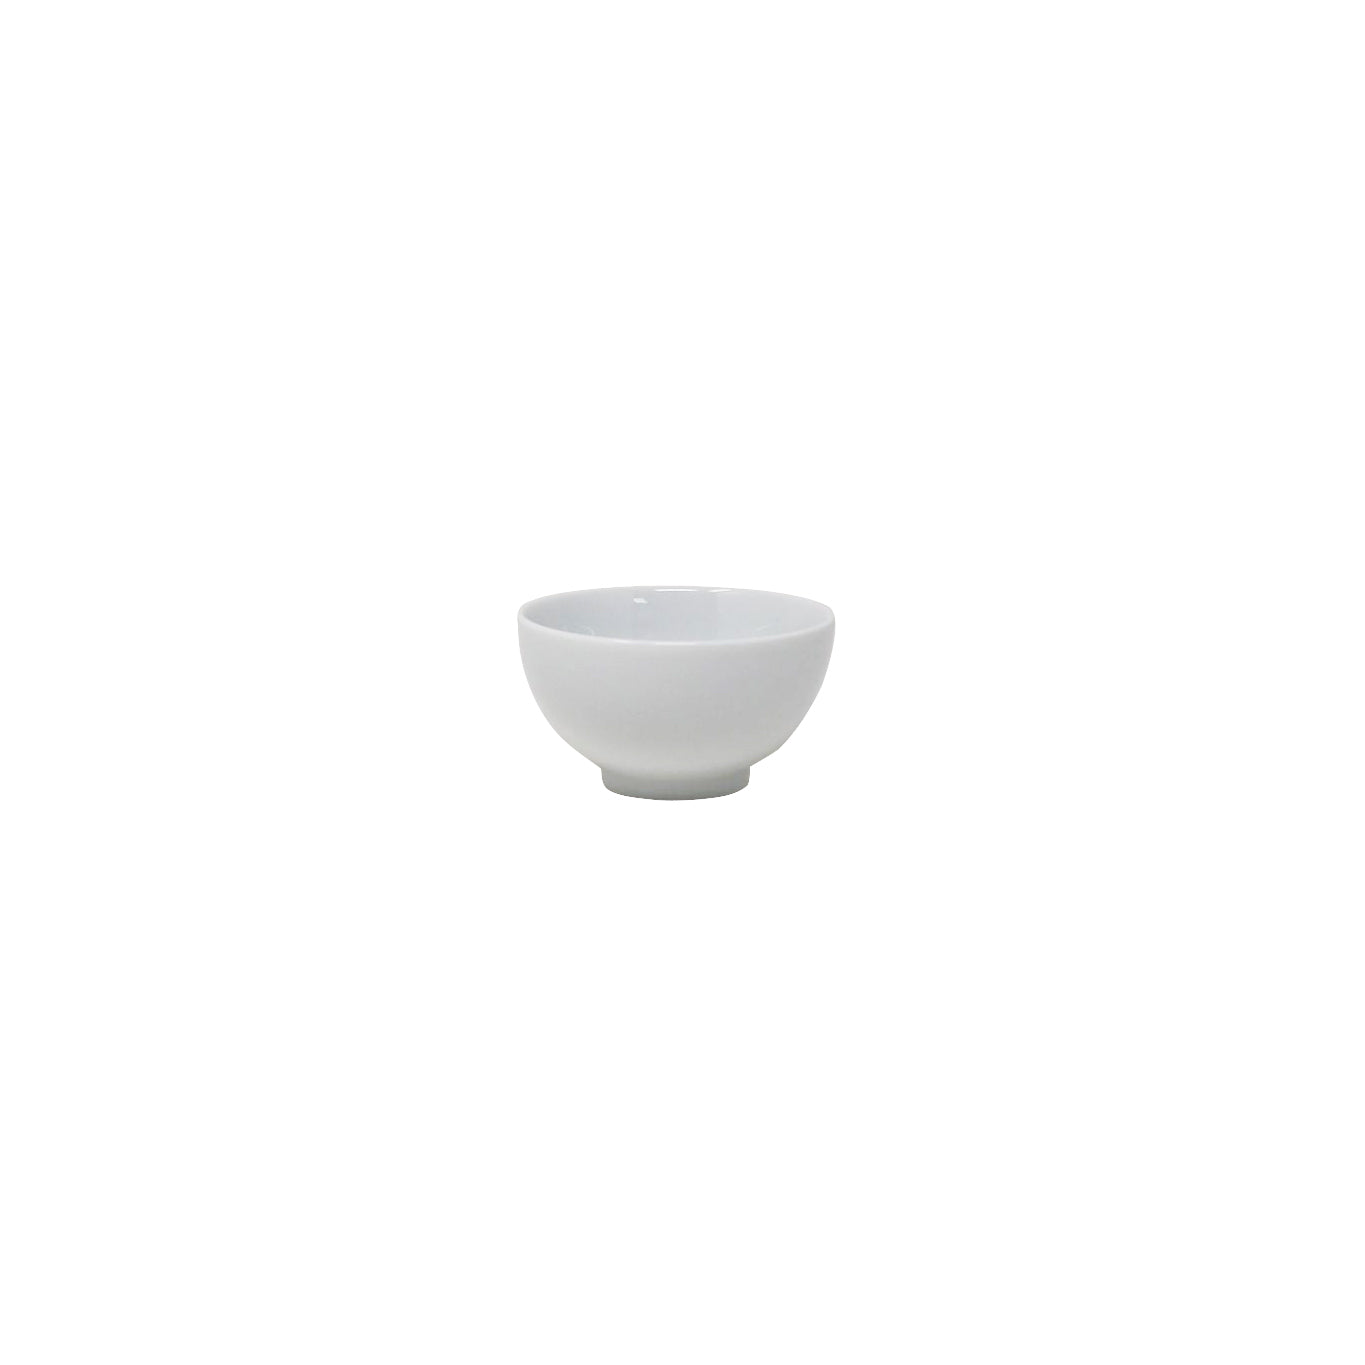 Noritake Lifestyle White Tea Cup 70ml